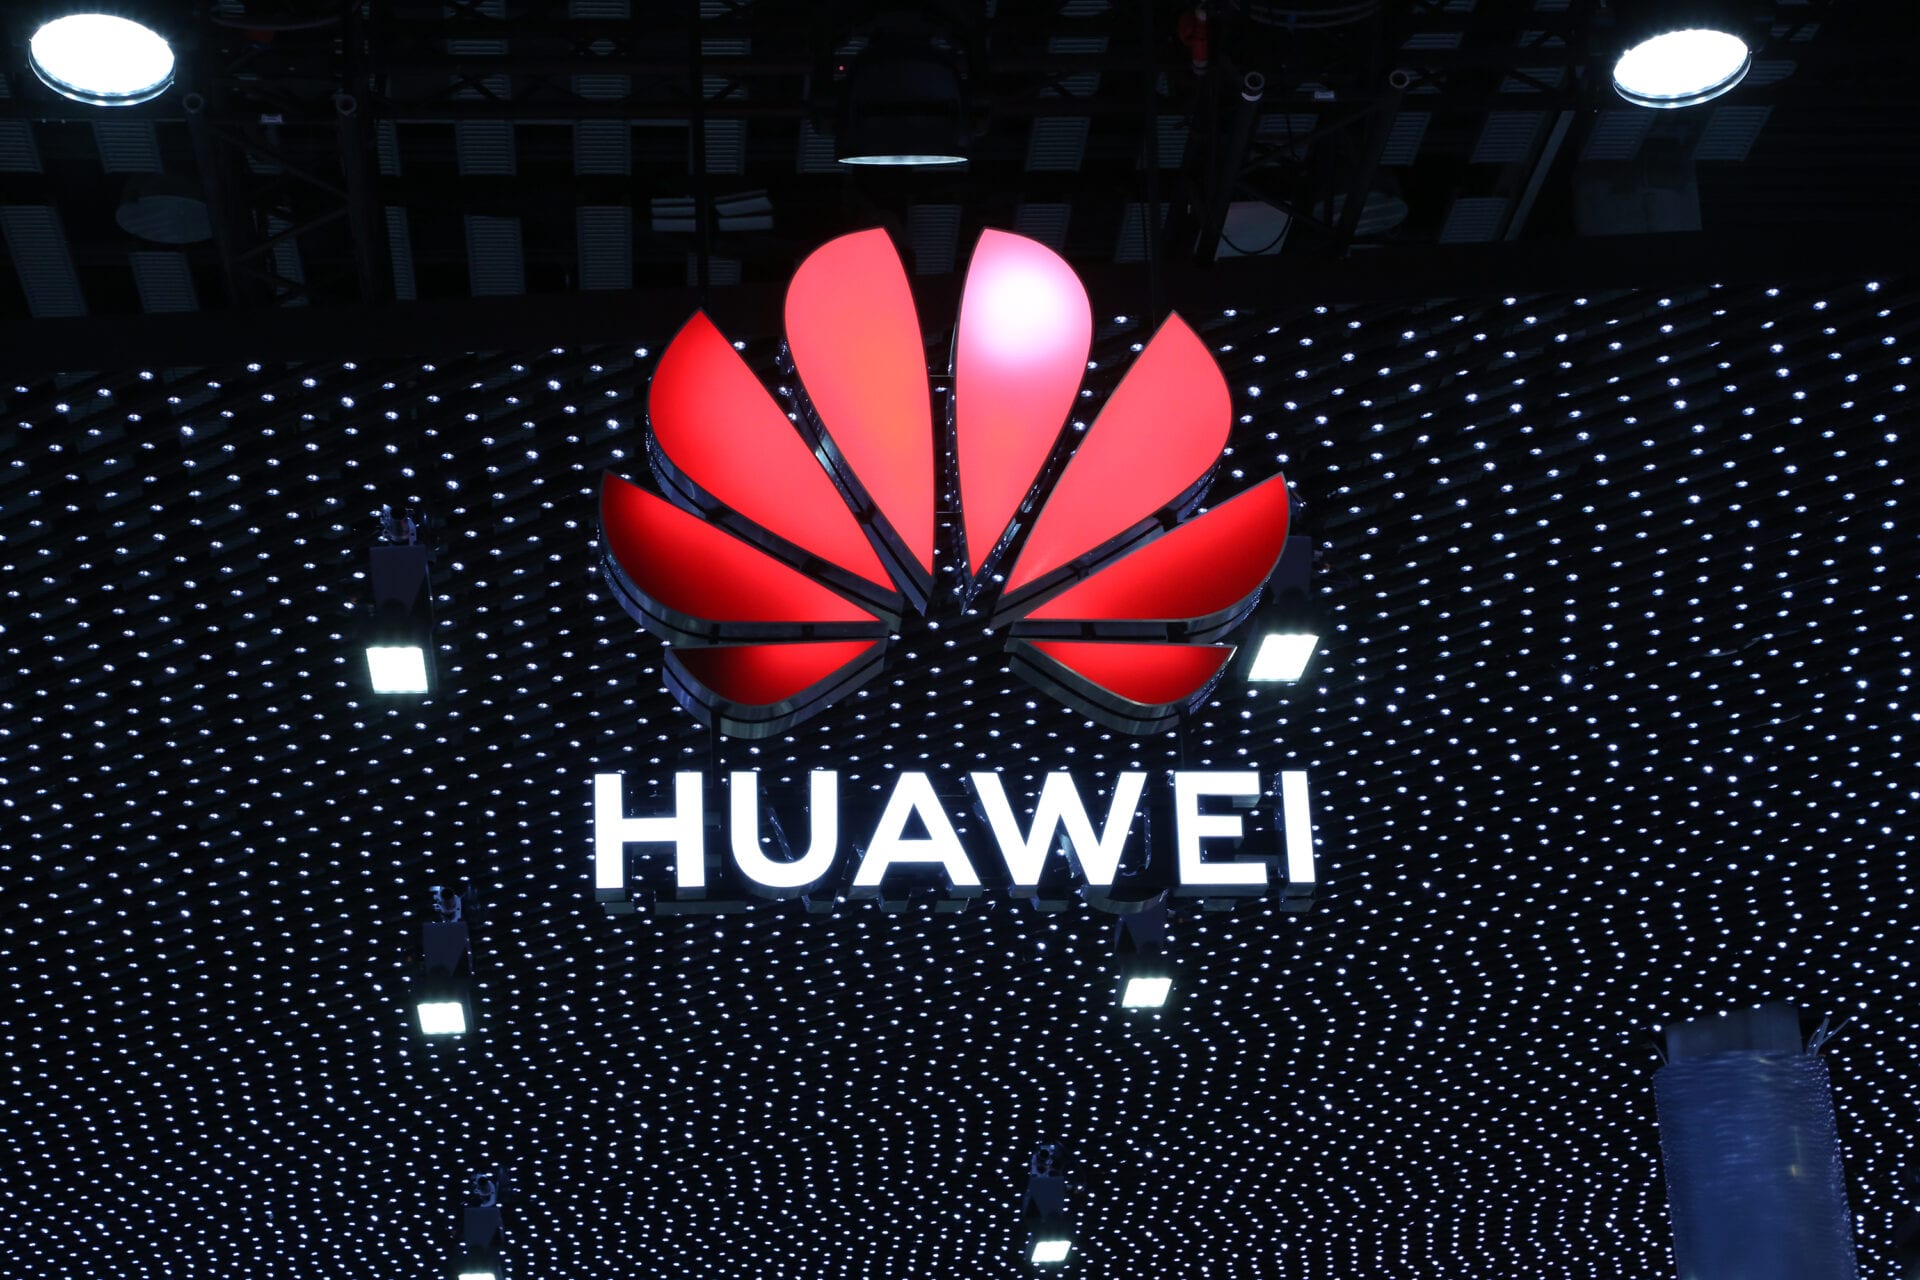 A desmontagem da estação base Huawei 5G revela quase 30% das peças baseadas nos EUA